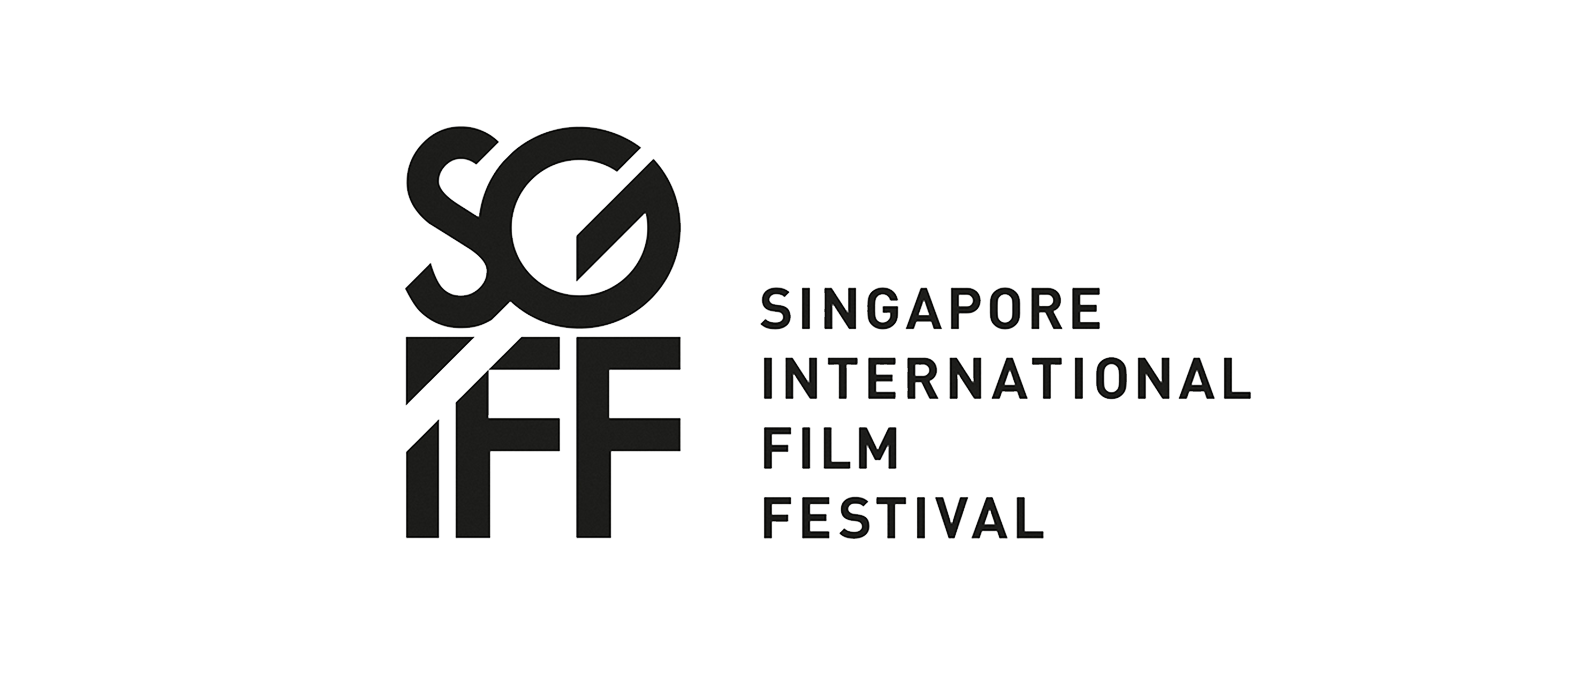 جشنواره بین المللی فیلم سنگاپور